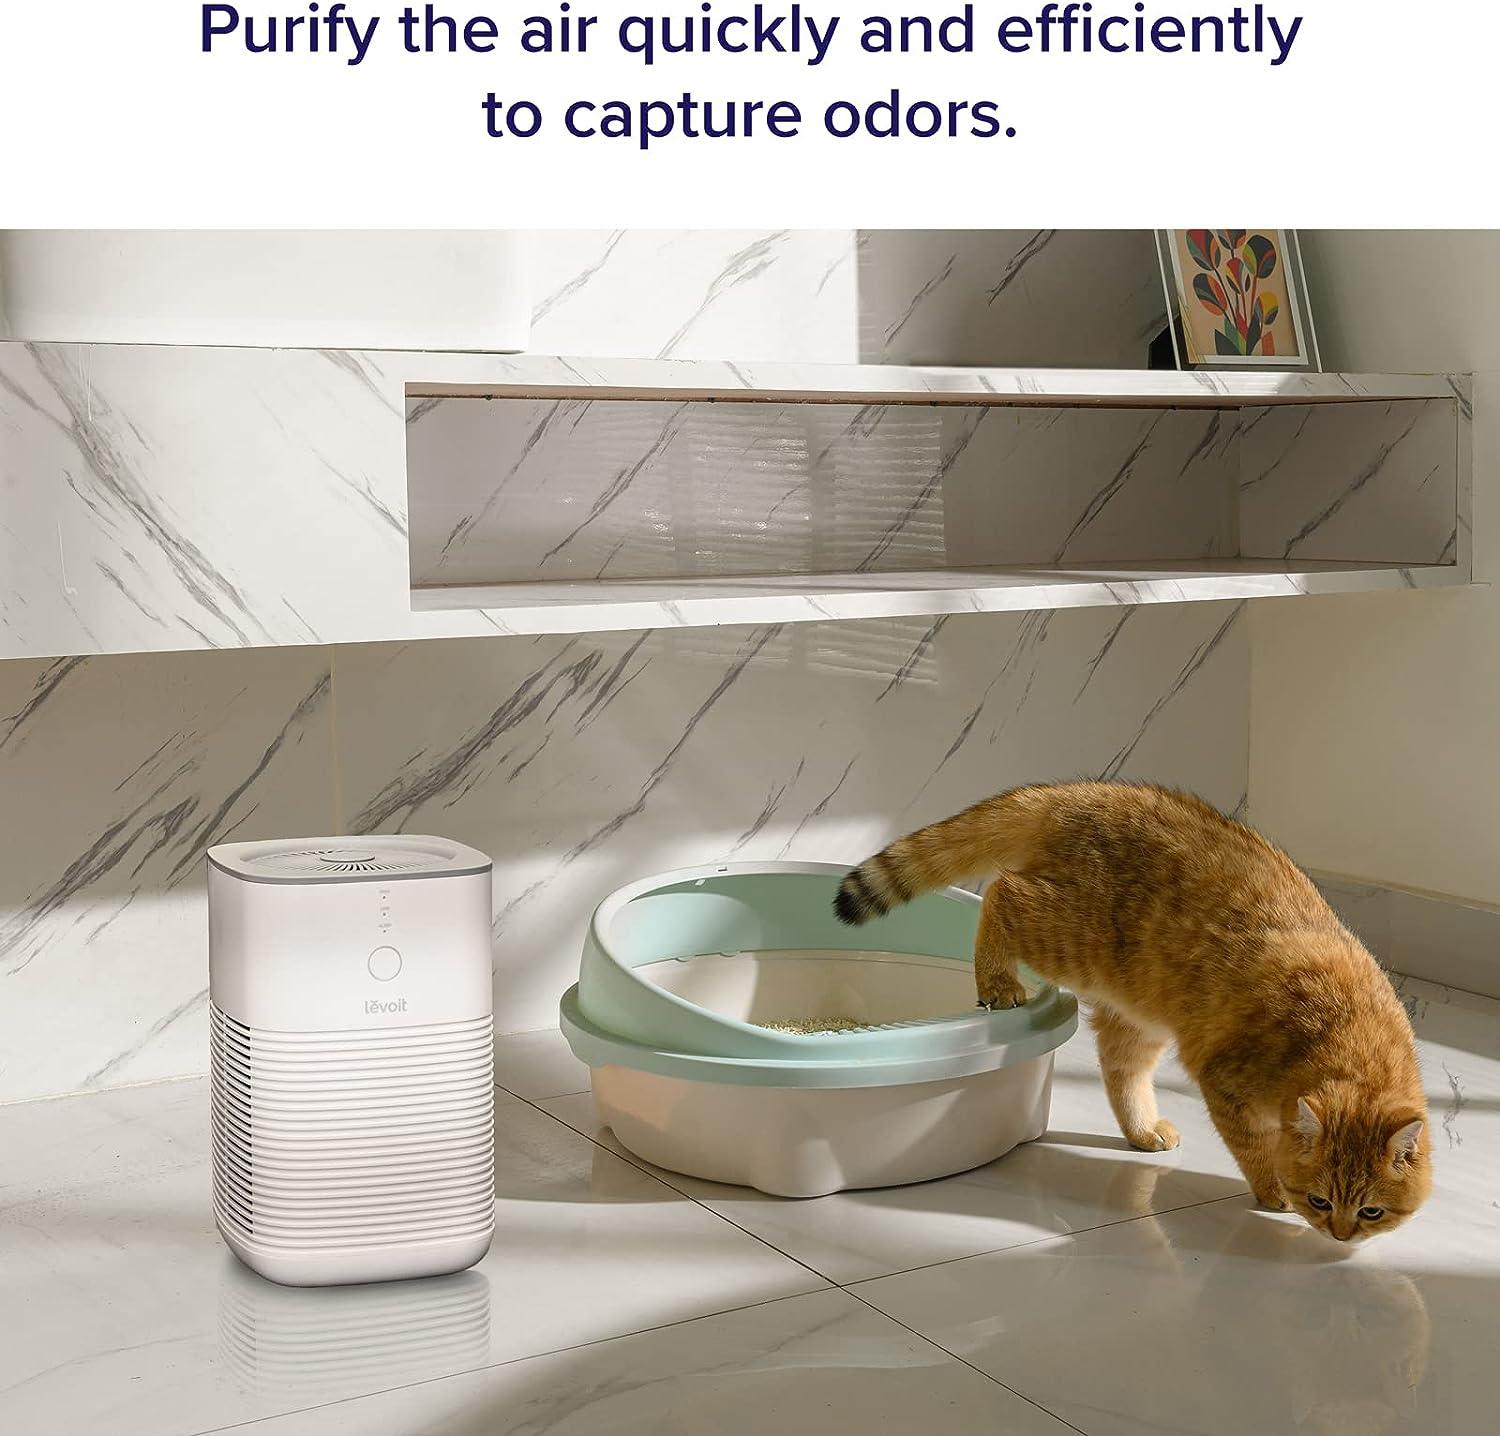 Purificador de aire para el hogar, dormitorio, filtro de ambientadores HEPA, - VIRTUAL MUEBLES